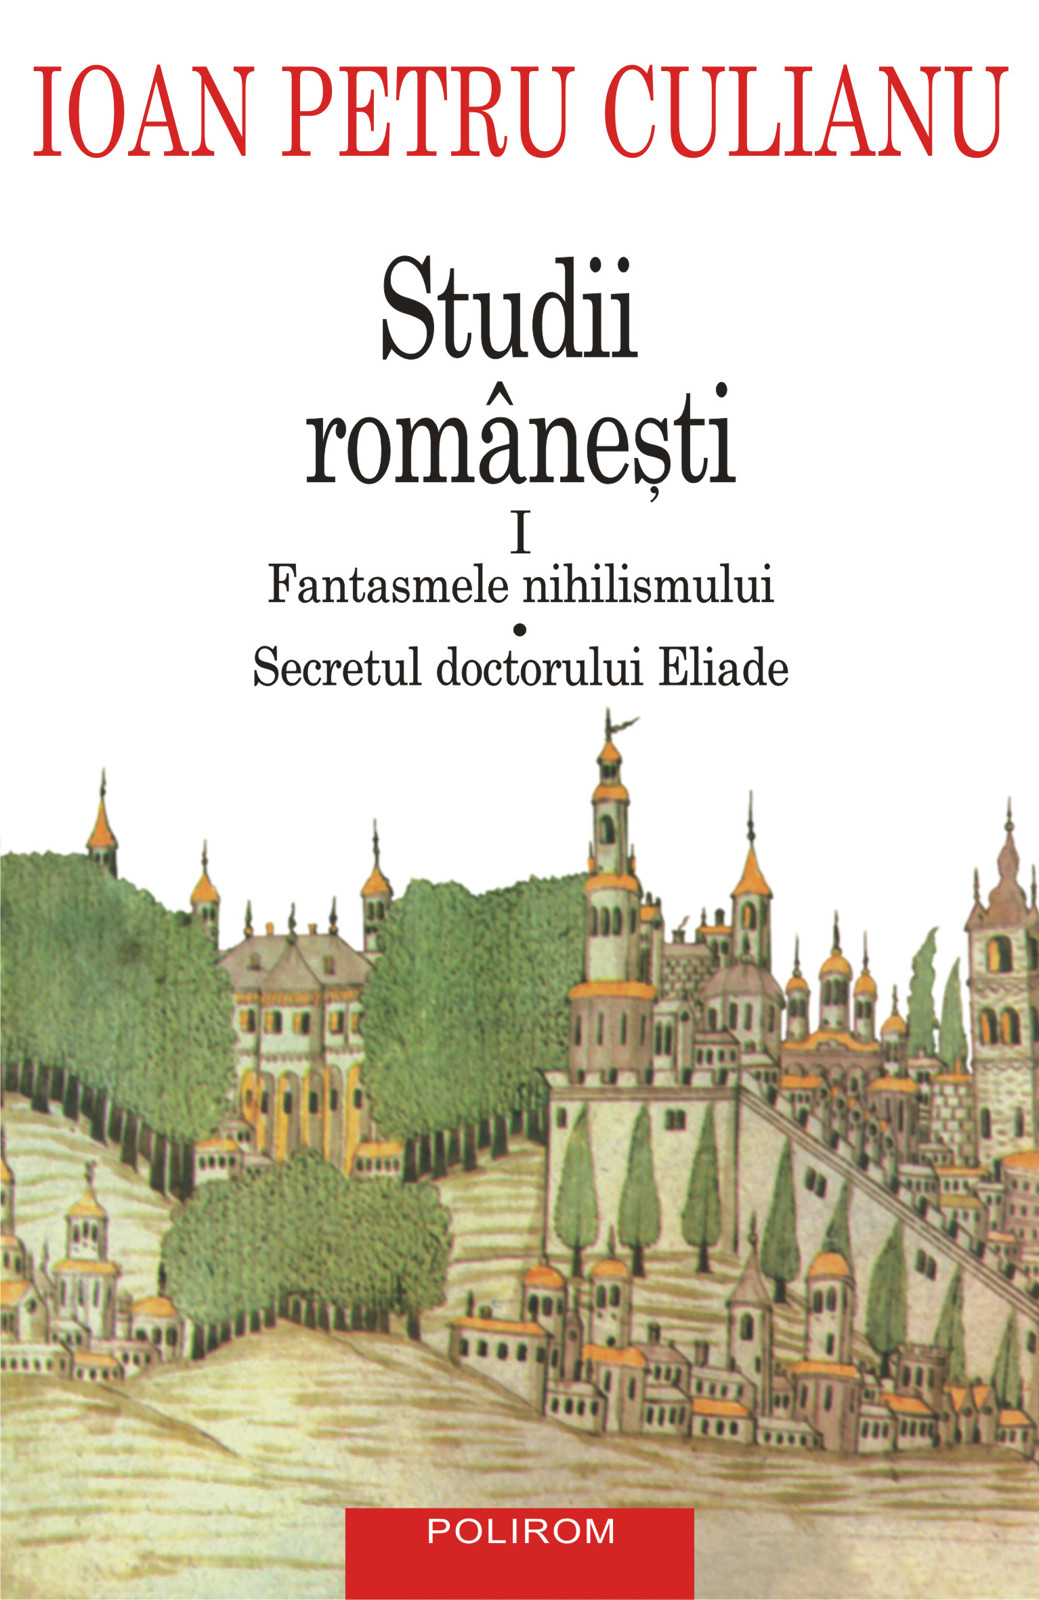 eBook Studii romanesti I. Fantasmele nihilismului, Secretul doctorului Eliade - Ioan Petru Culianu